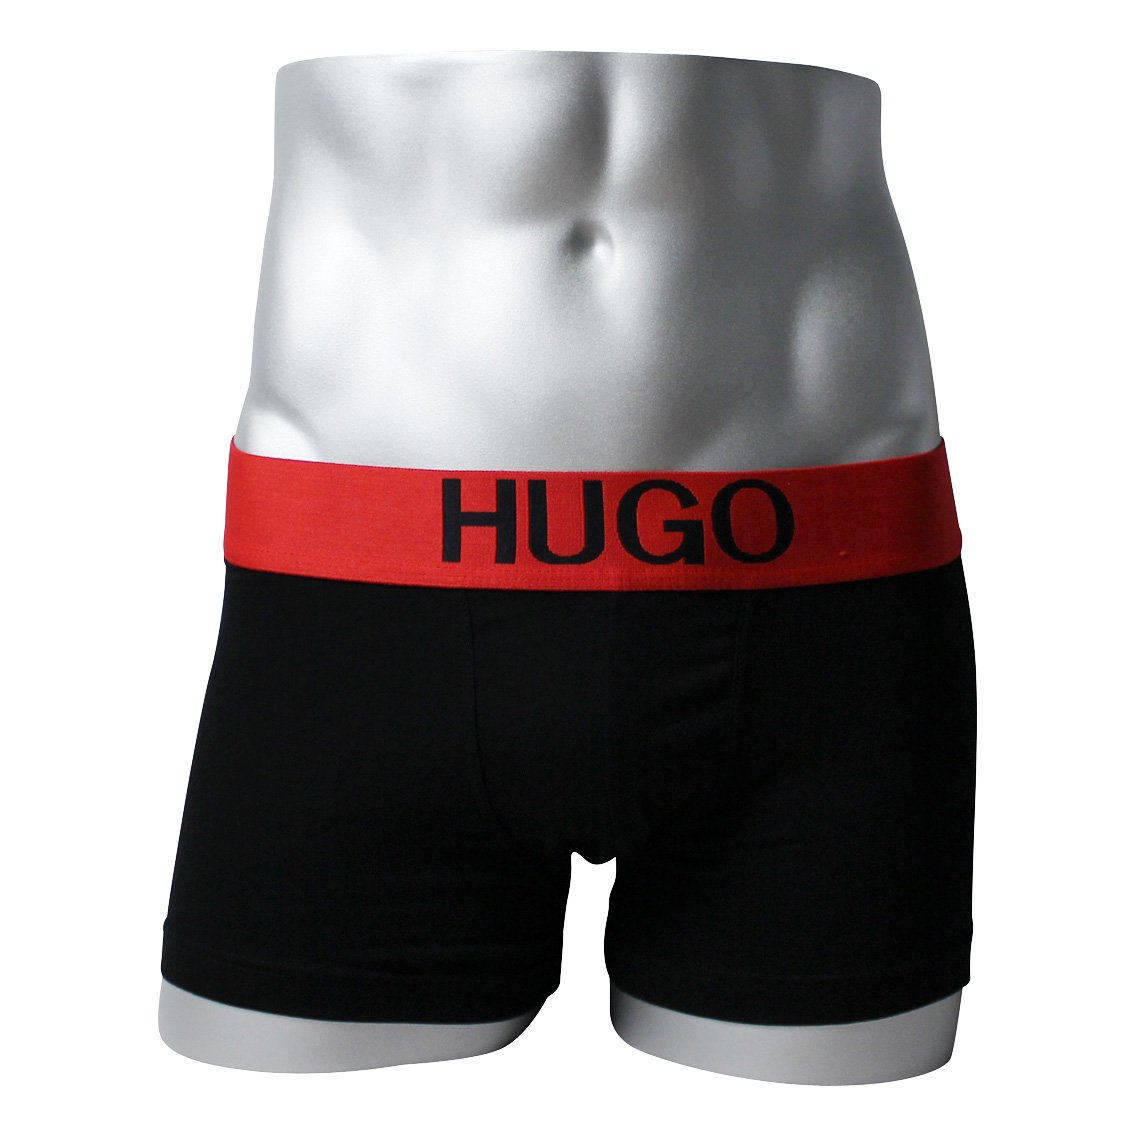 Hugo Boss Pant